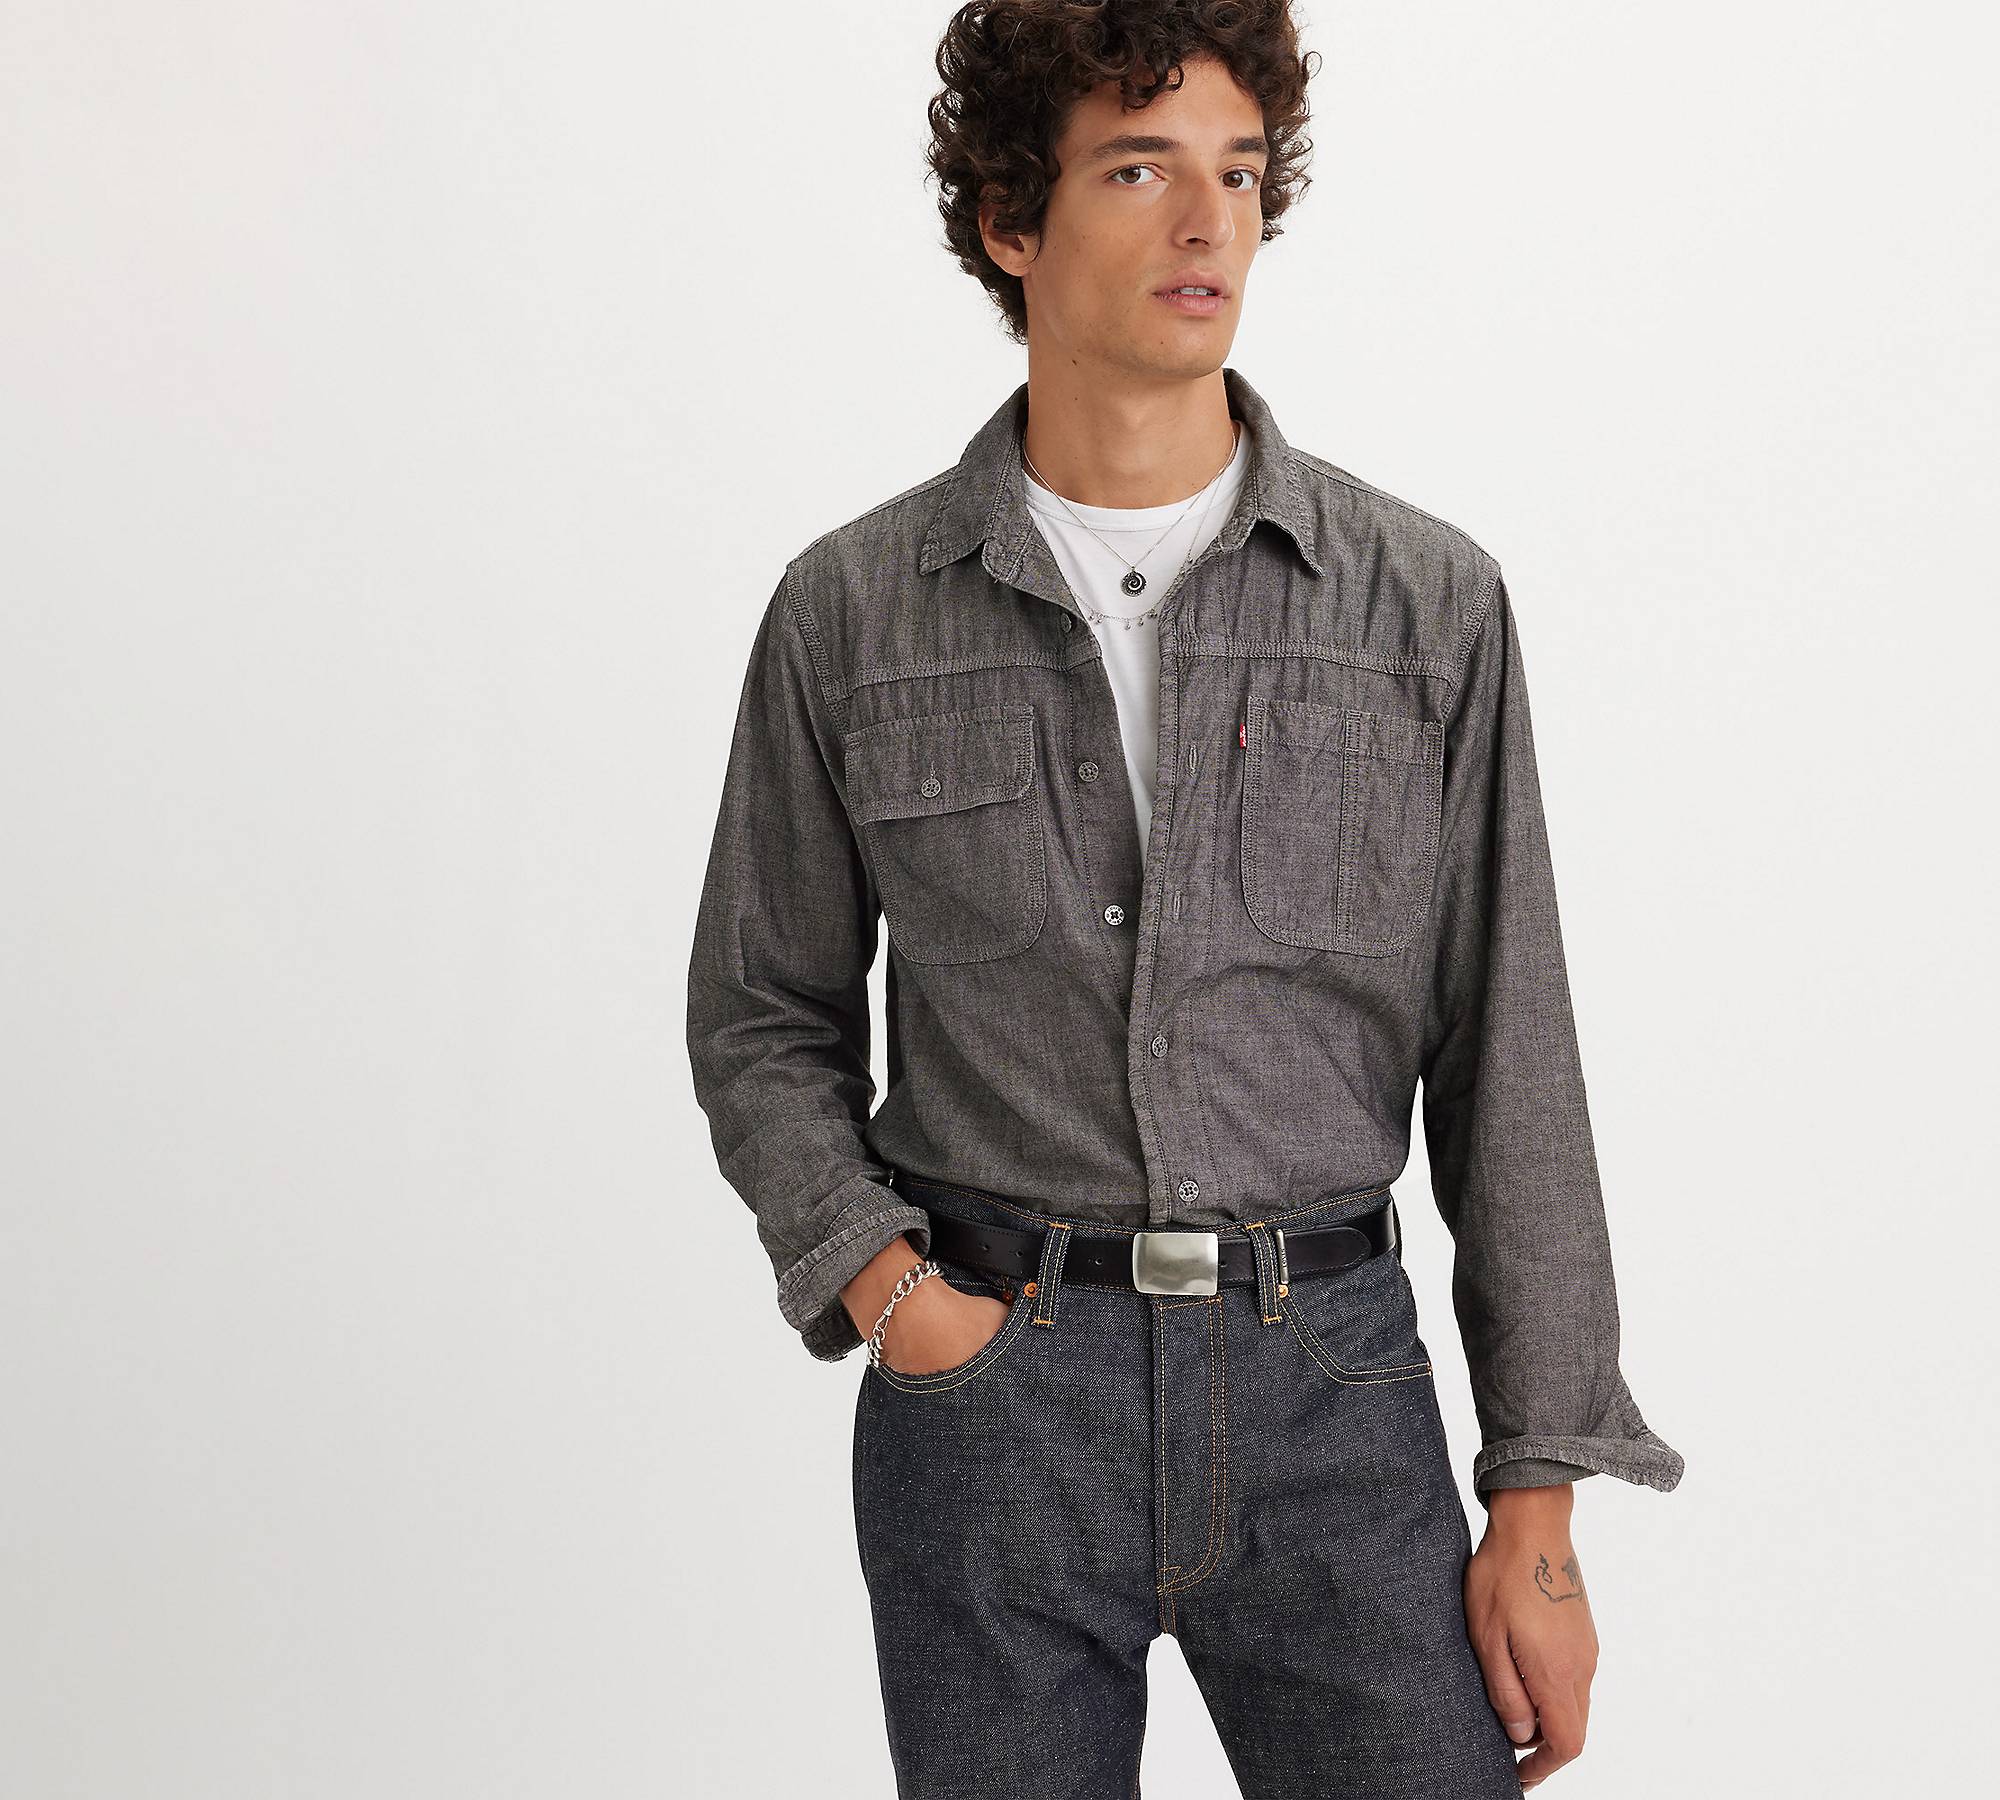 Auburn-arbetarskjorta med lång ärm 1